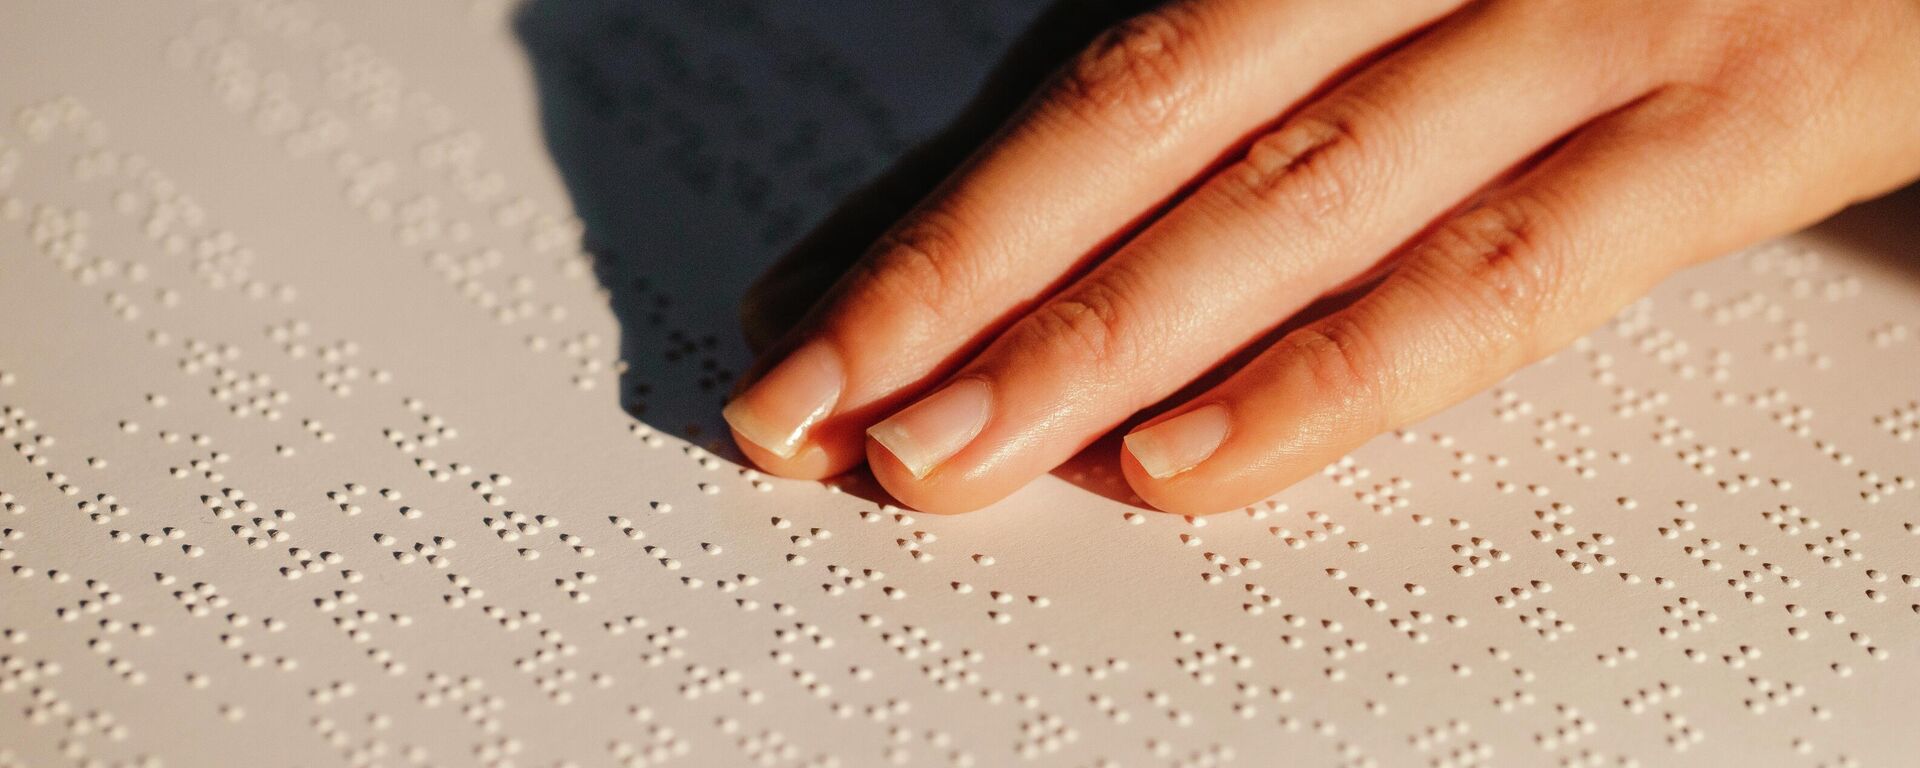 Una persona leyendo en braille - Sputnik Mundo, 1920, 01.10.2021